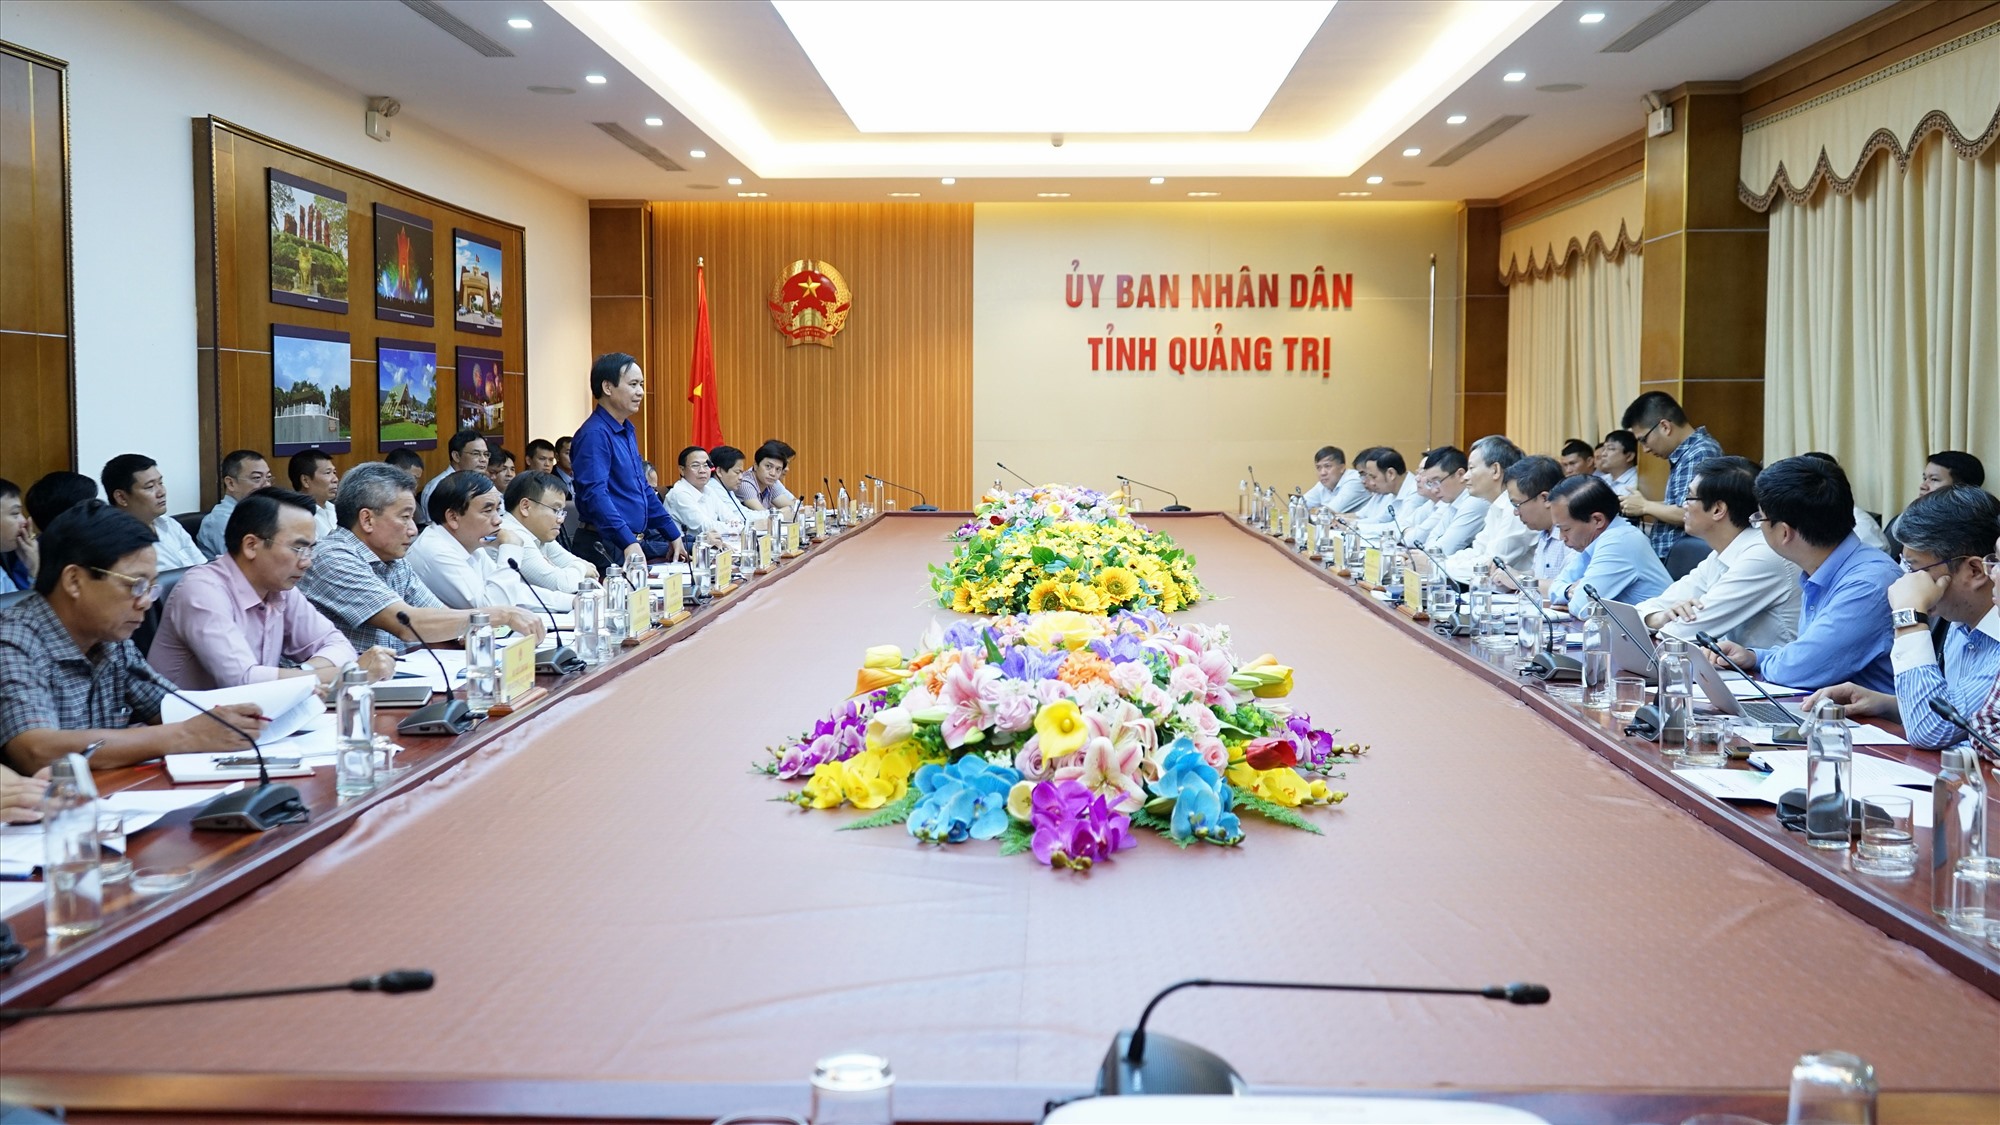 Phó Bí thư Tỉnh ủy, Chủ tịch UBND tỉnh Võ Văn Hưng kết luận buổi làm việc - Ảnh: L.A